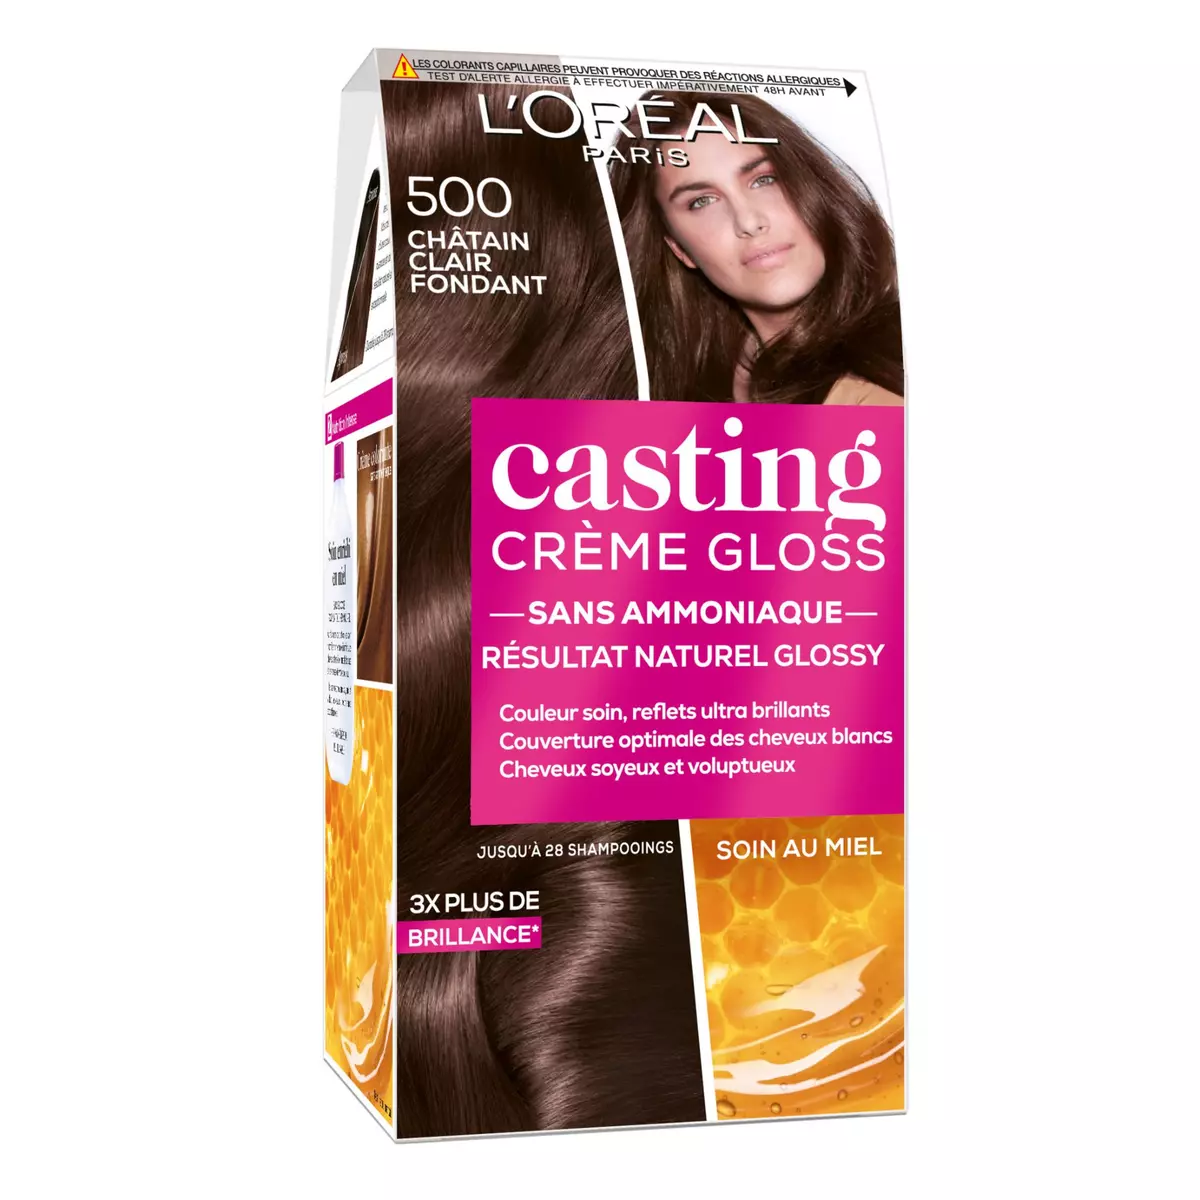 L'OREAL Casting crème gloss coloration 500 châtain clair 3 produits 1 kit